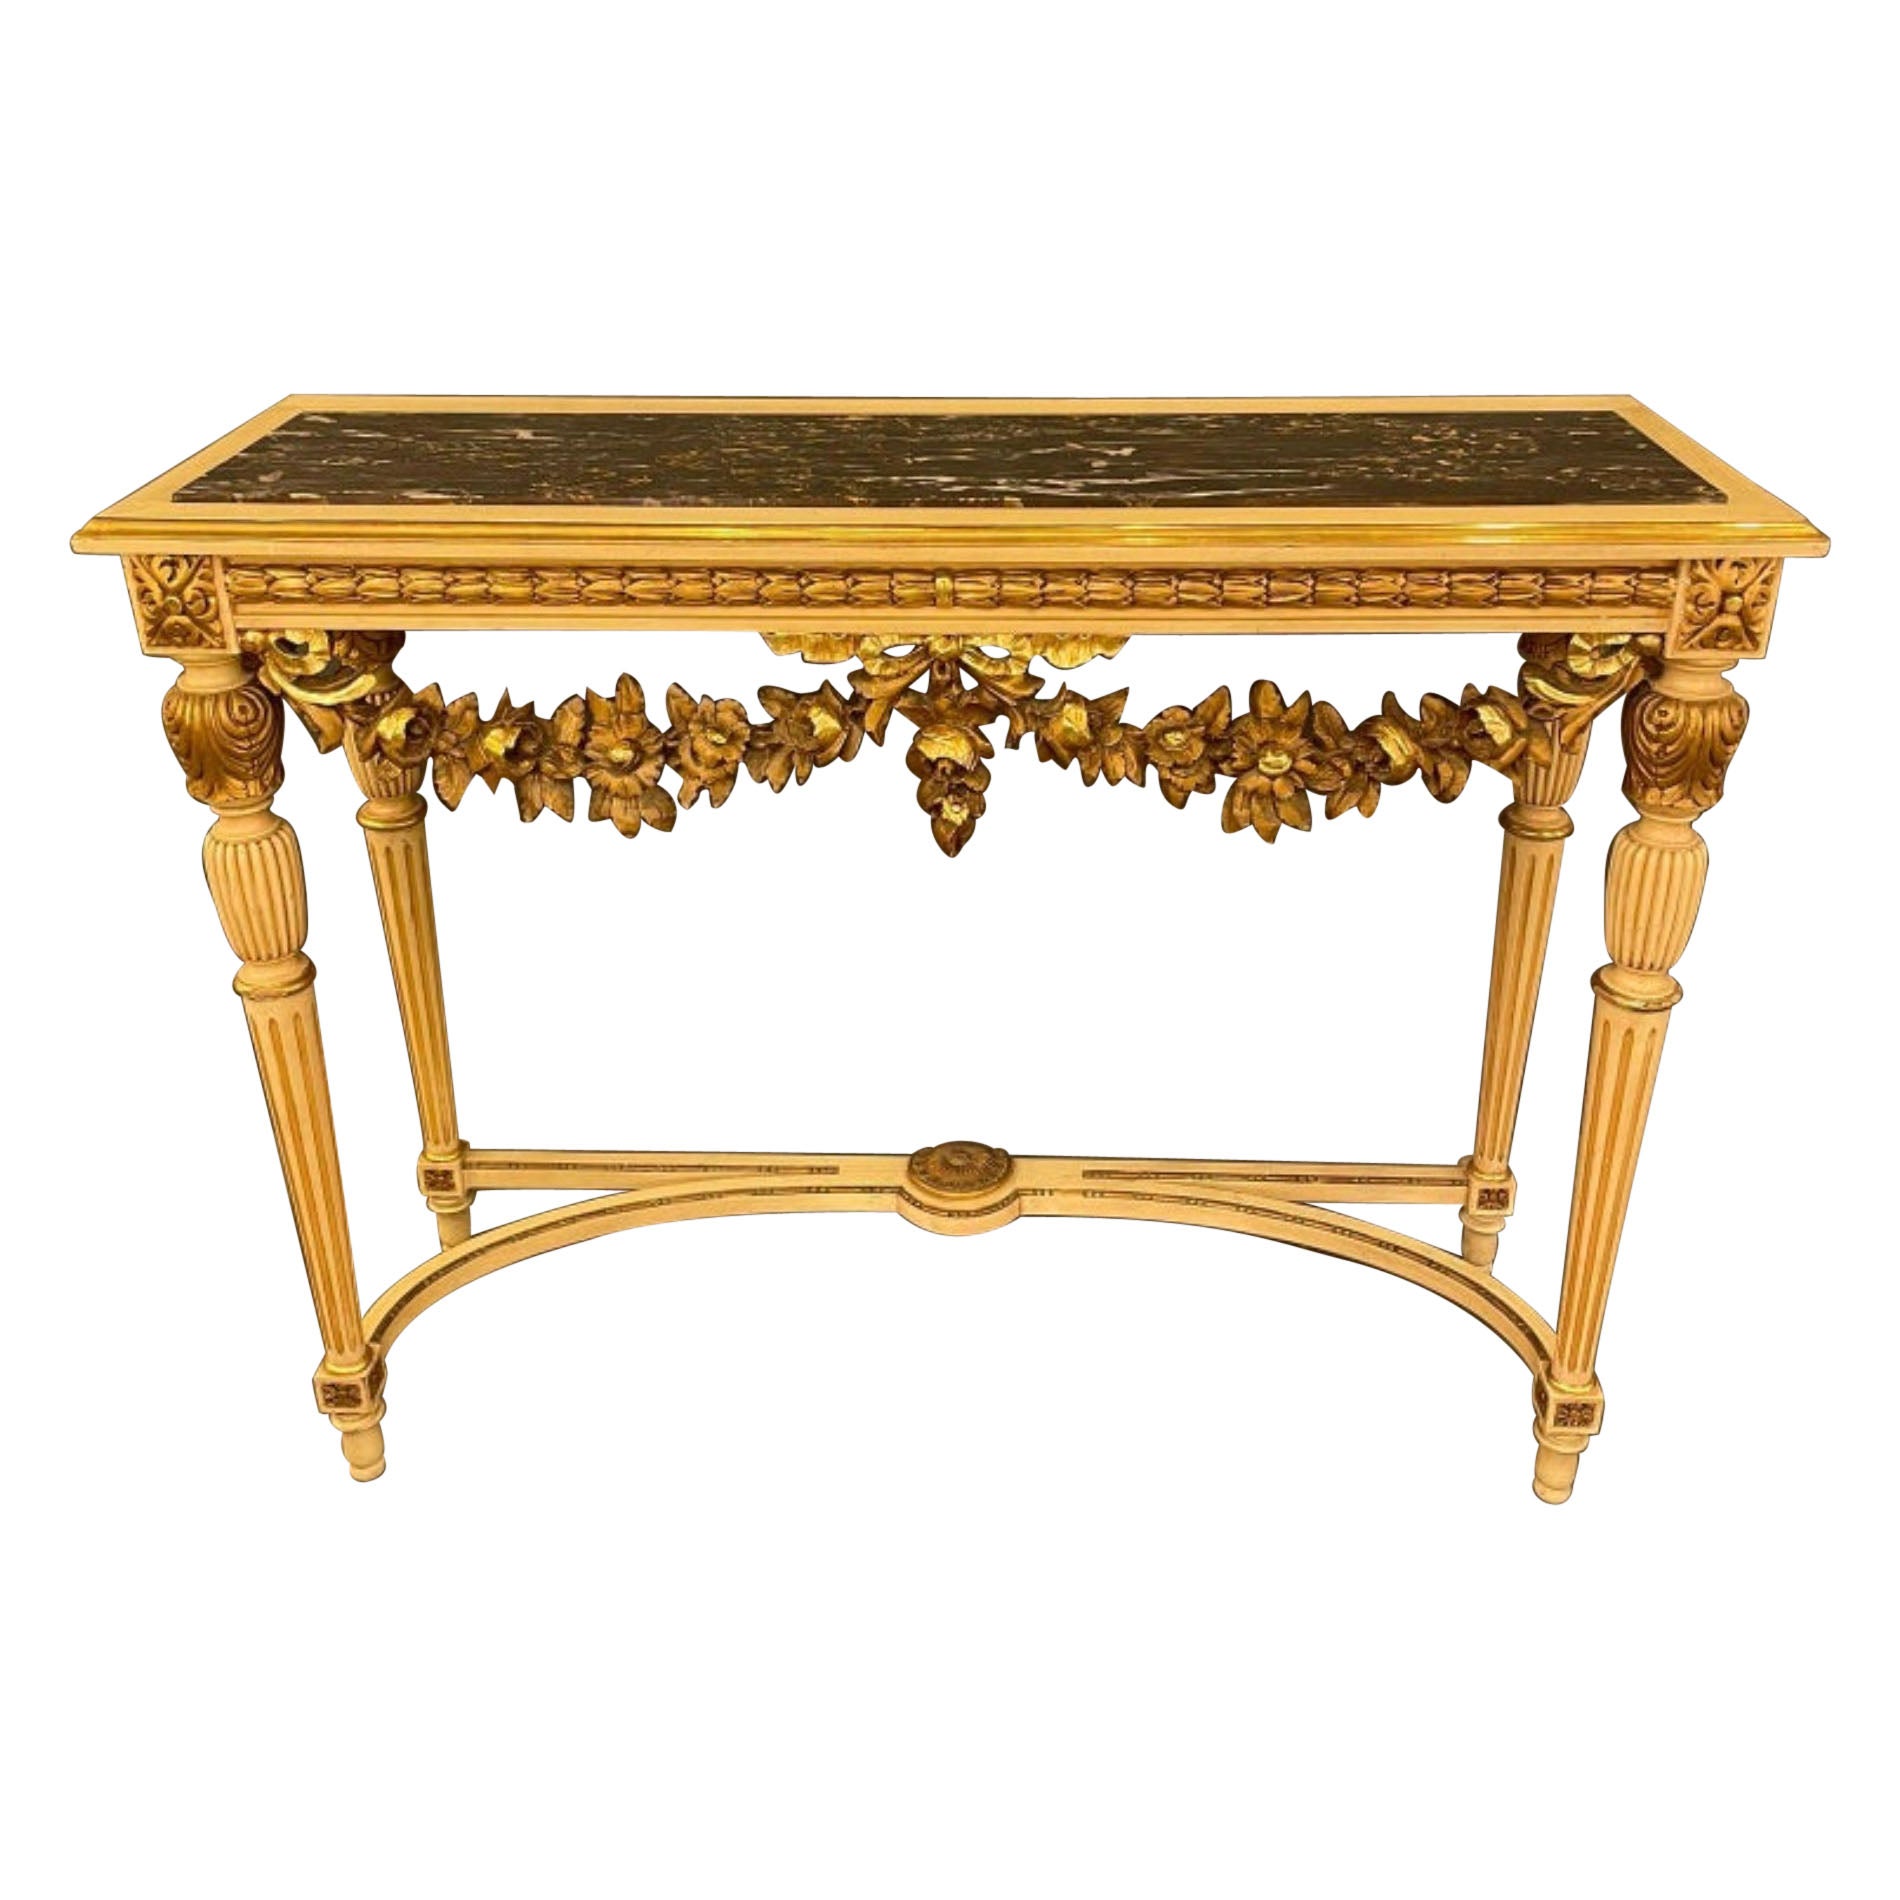 Table console de style Louis XVI en bois doré surmonté de marbre, vers les années 1890